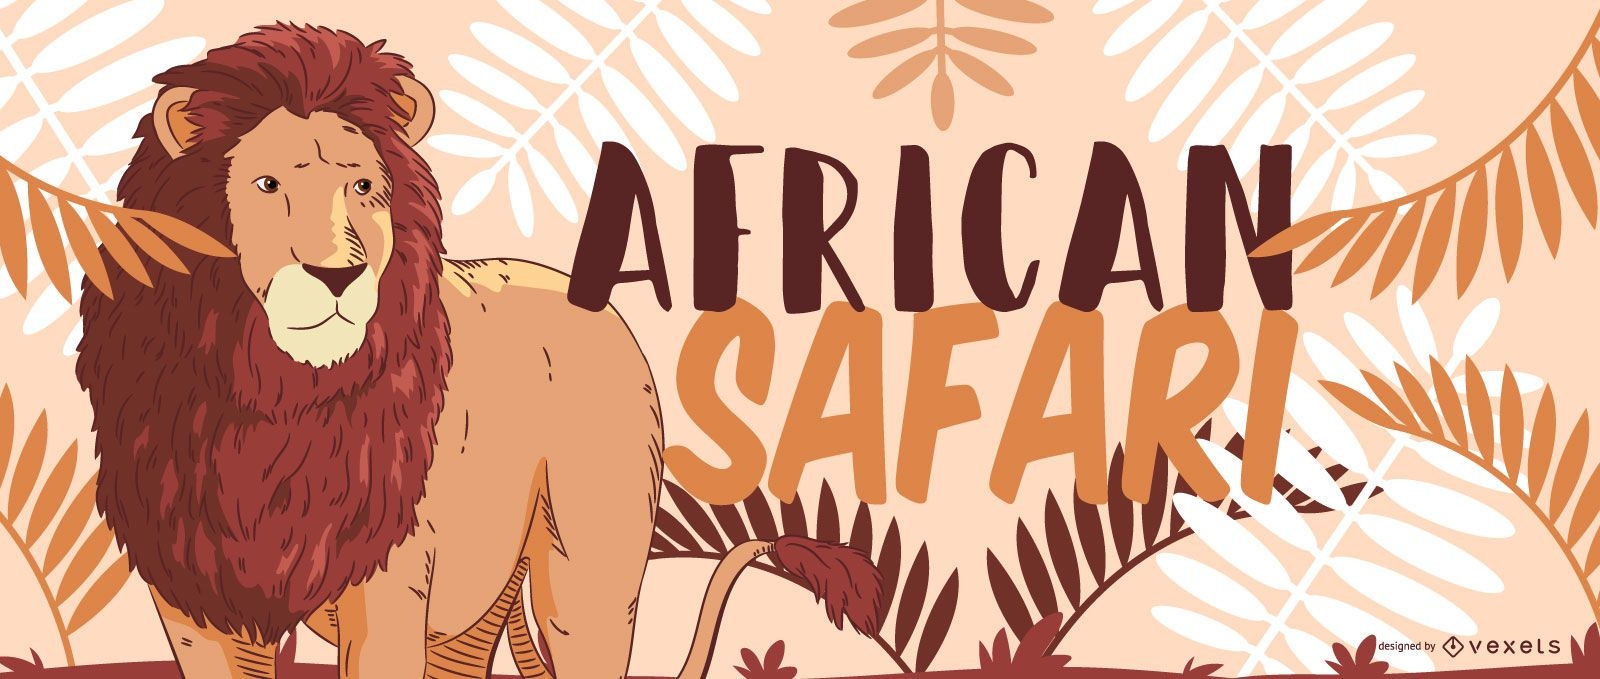 Desenho de le?o safari africano